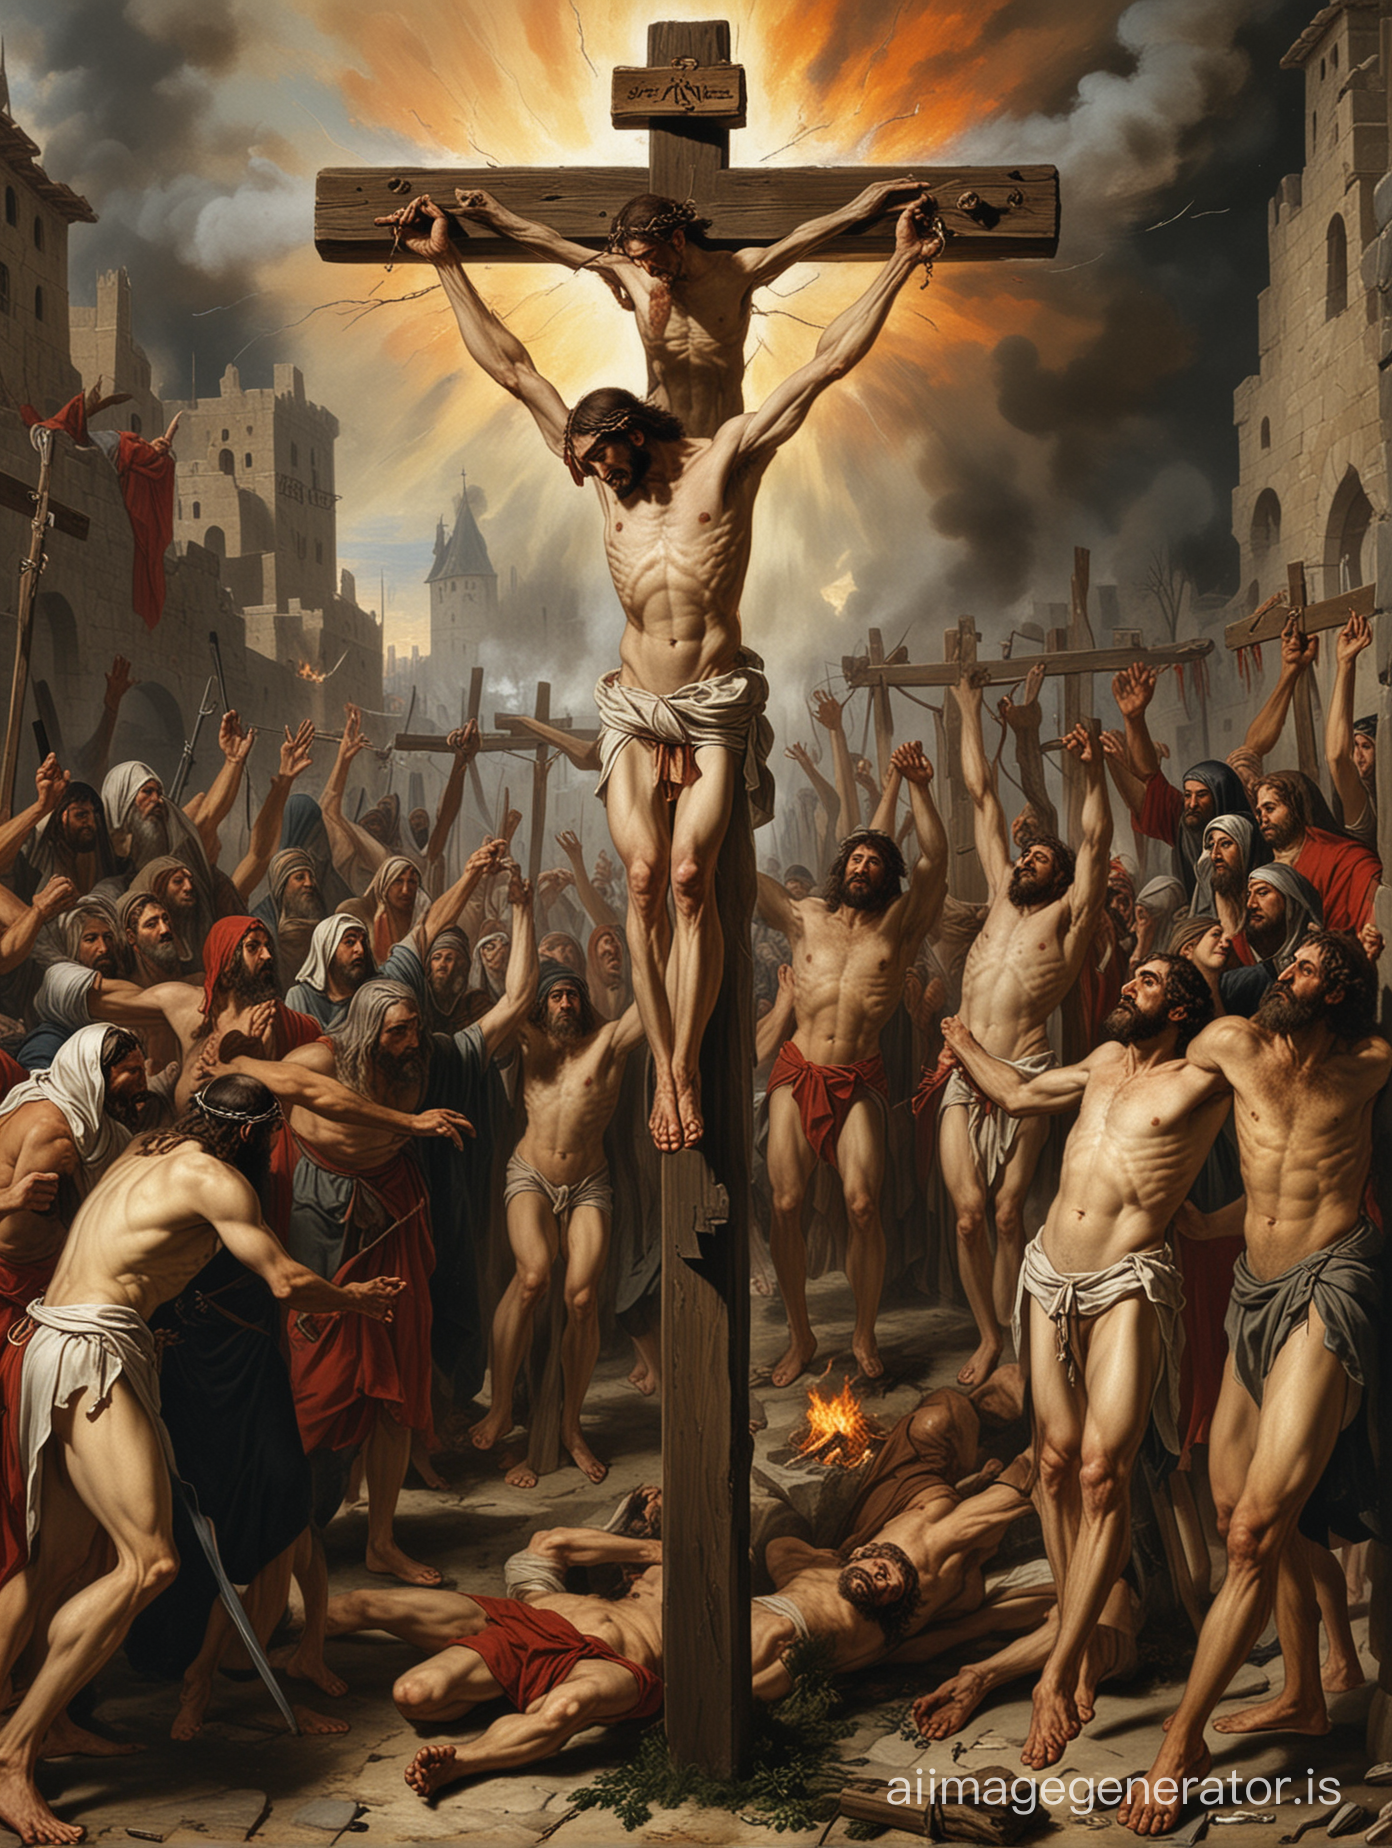 Judeus homens e mulheres crucificados na cruz (nao e Jesus)  queimando  na fogueira santa da  Idade media durante a Inquisicao com Torquemada em 1486